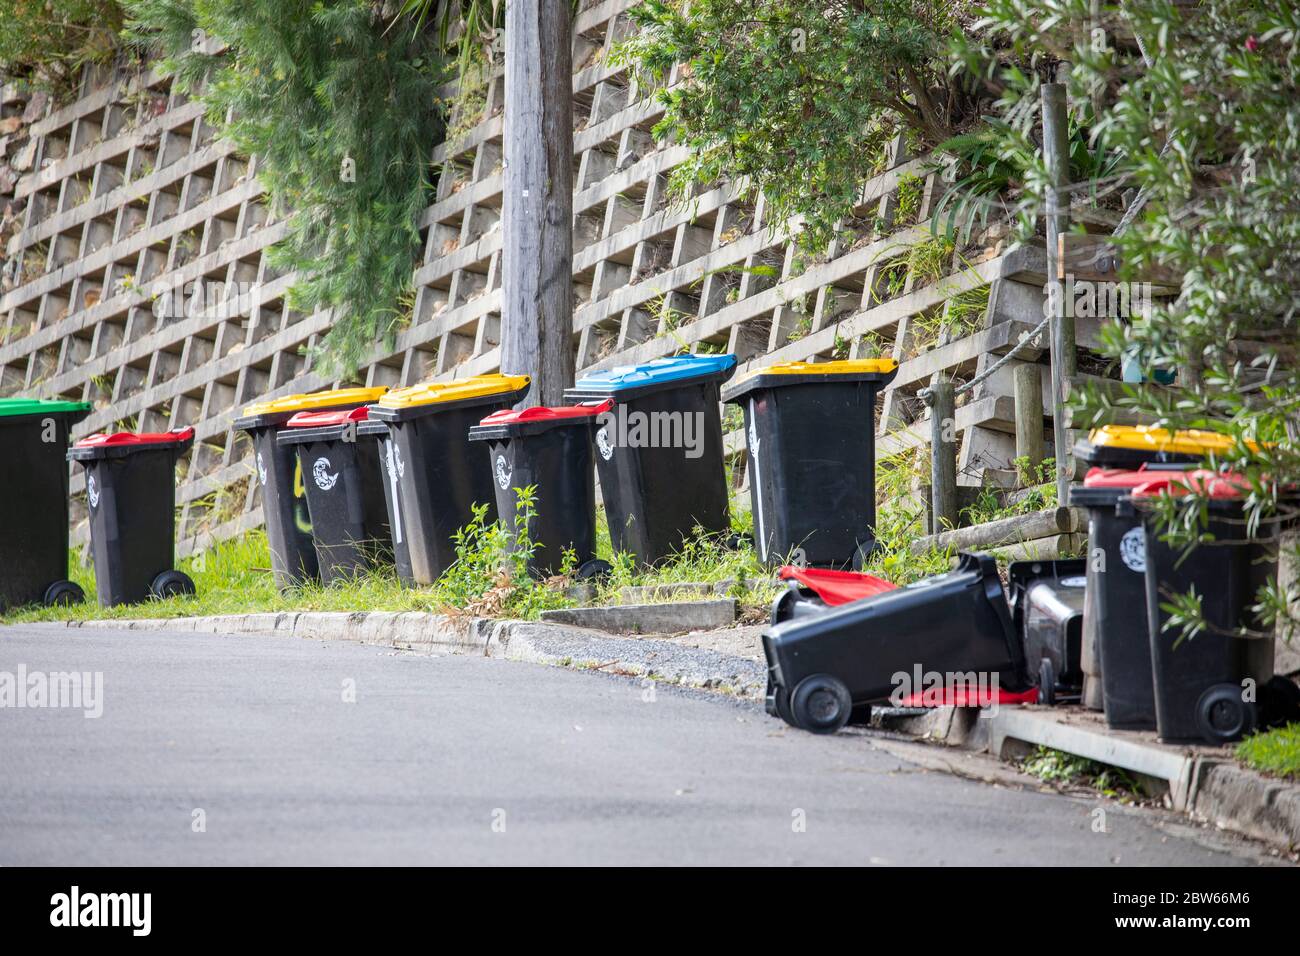 Der Haushalt recycelt Wheelie-Mülleimer in einer Straße in Sydney, nachdem er vom australischen müllsammeldienst des rates geleert wurde Stockfoto